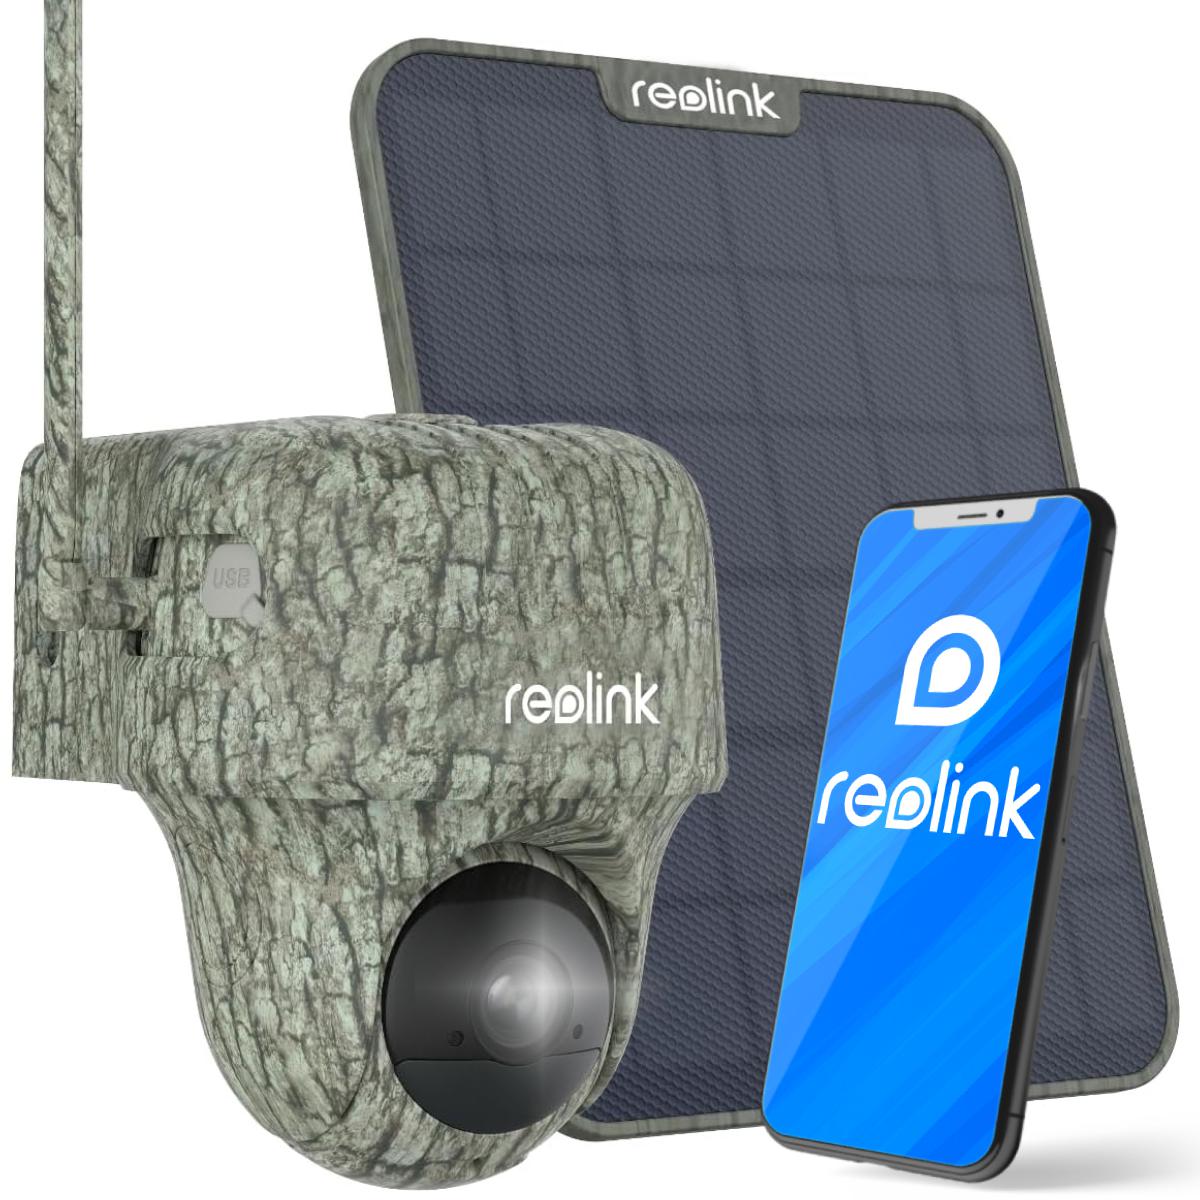 Kamera obserwacyjna IP PT Reolink GO Series G450 3G/4G LTE z panelem solarnym – najważniejsze cechy: